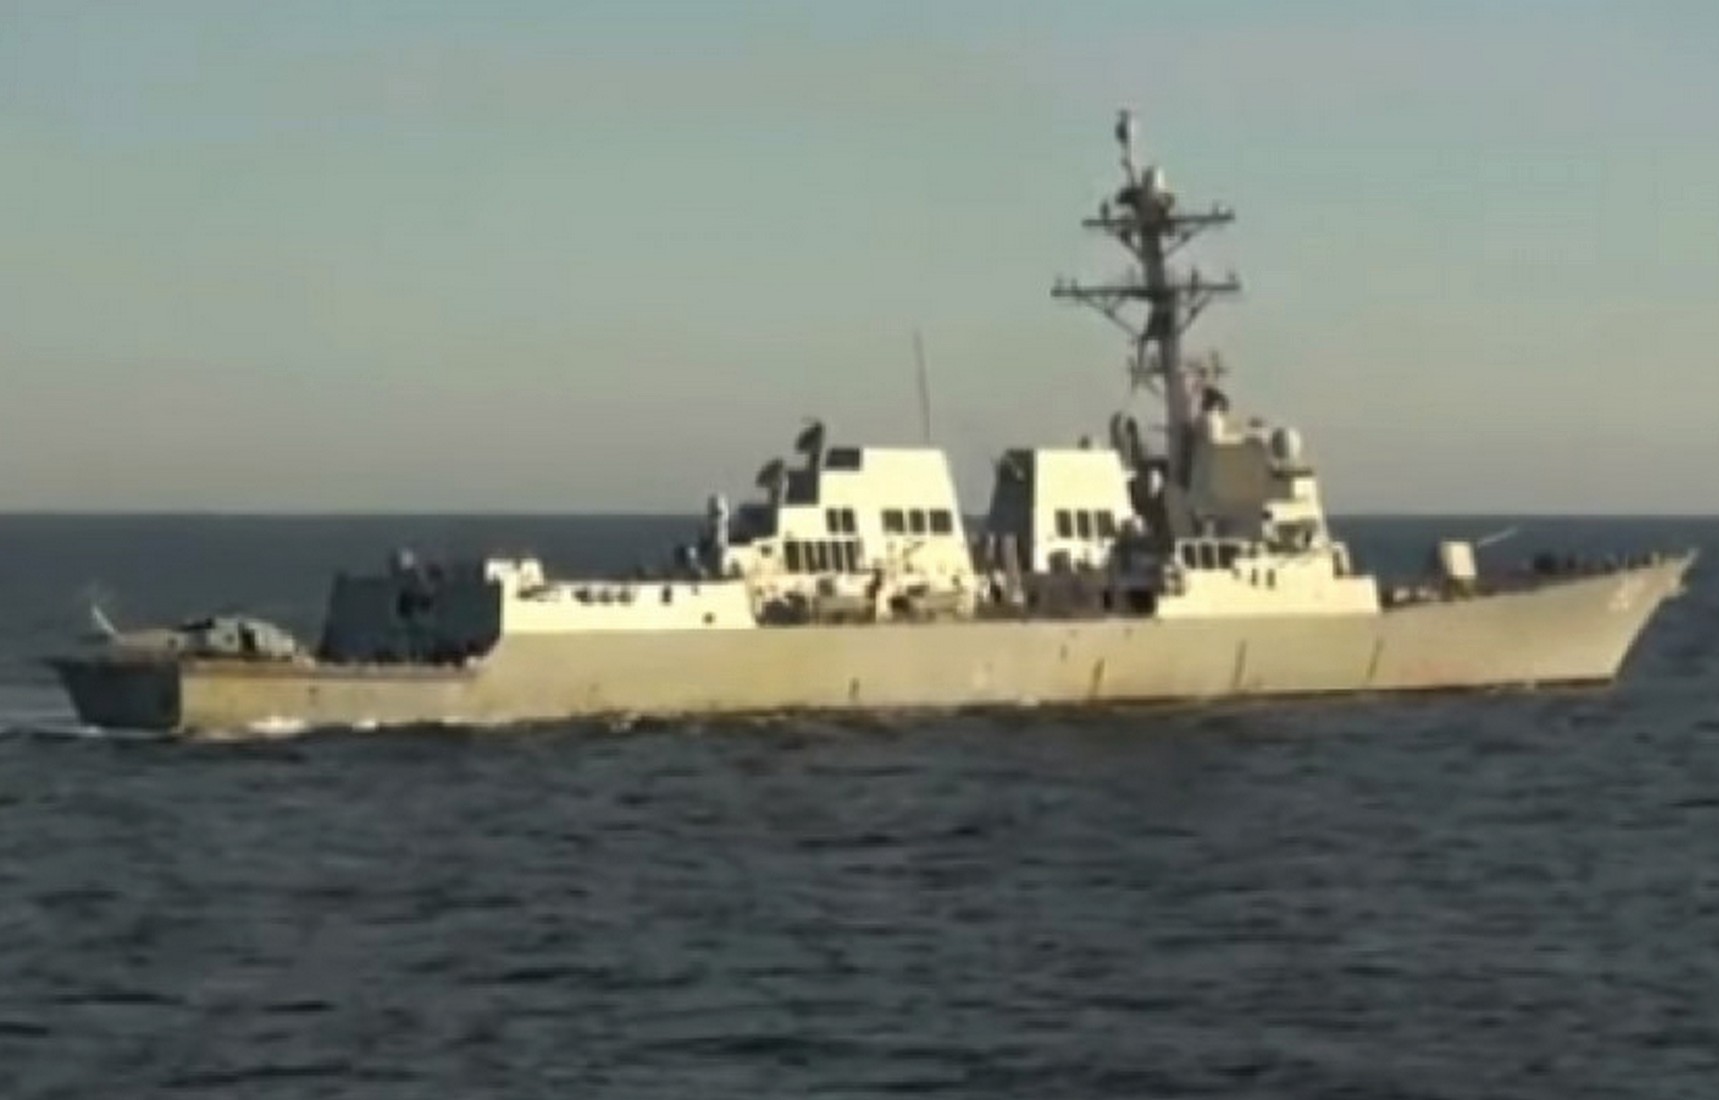 Опубликовано видео с эсминцем США, который вытеснили в нейтральные воды в районе Владивостока